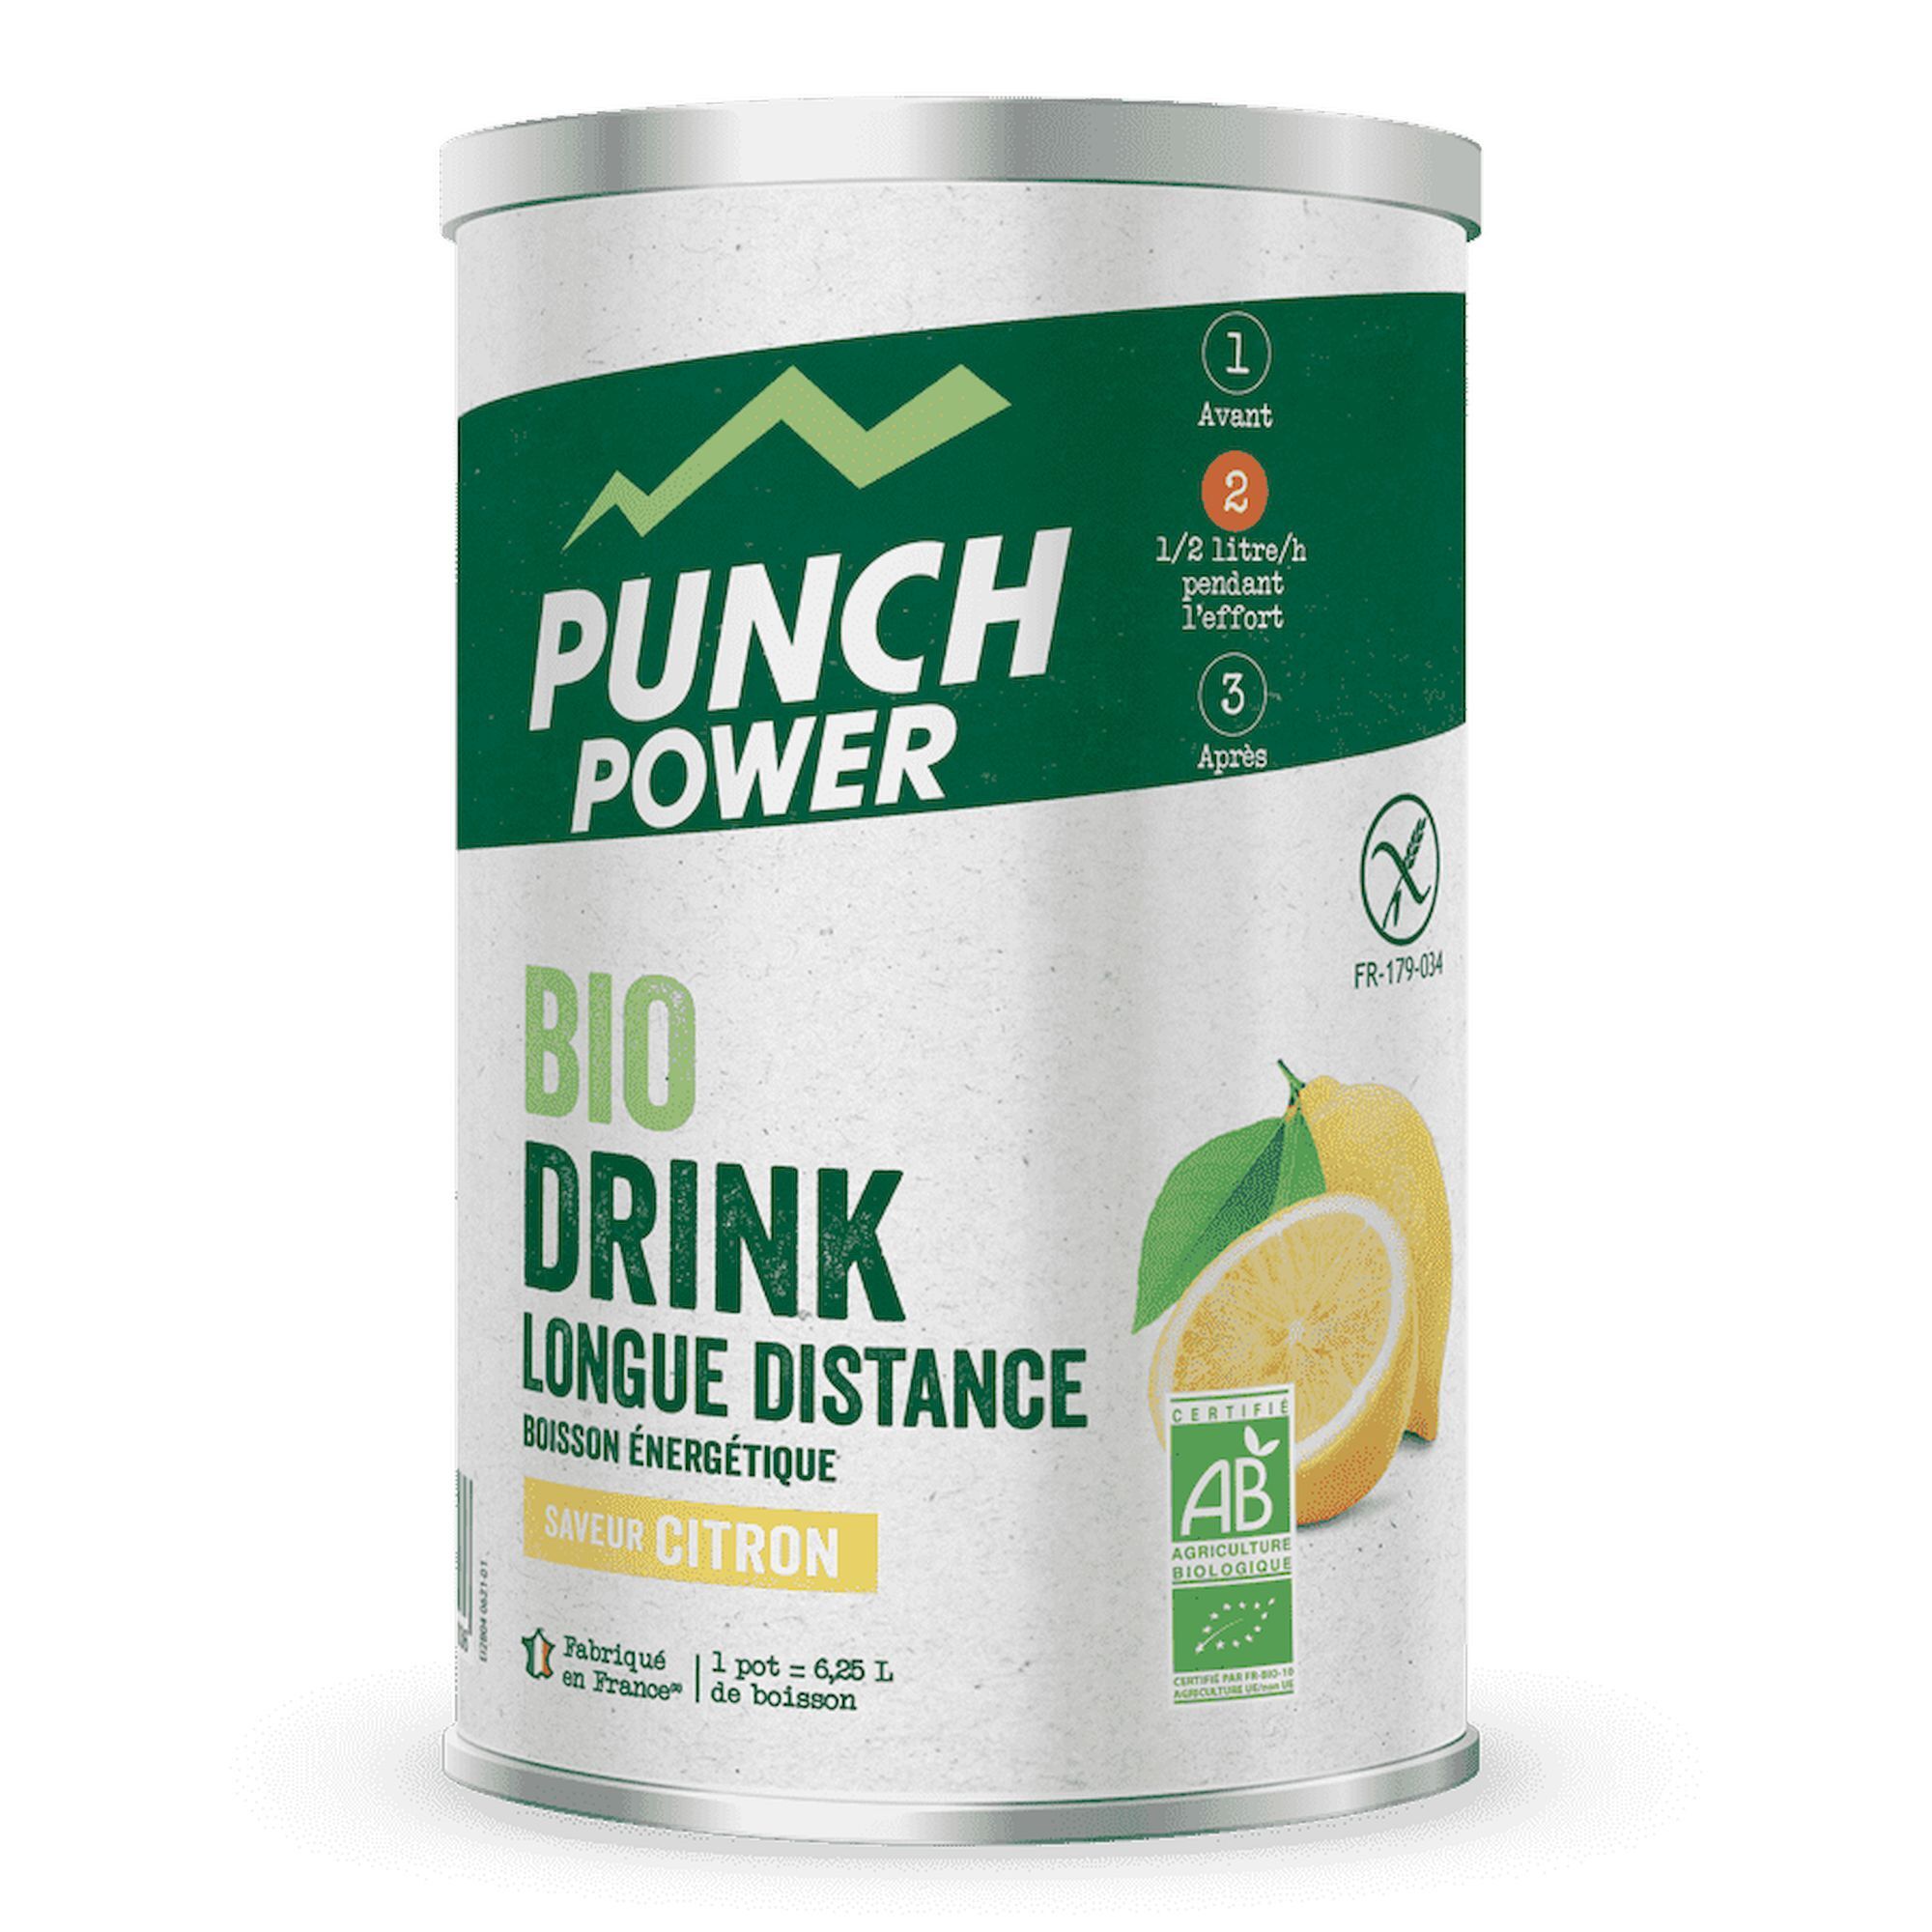 Punch Power Boisson énergétique longue distance antioxydant Citron 500g